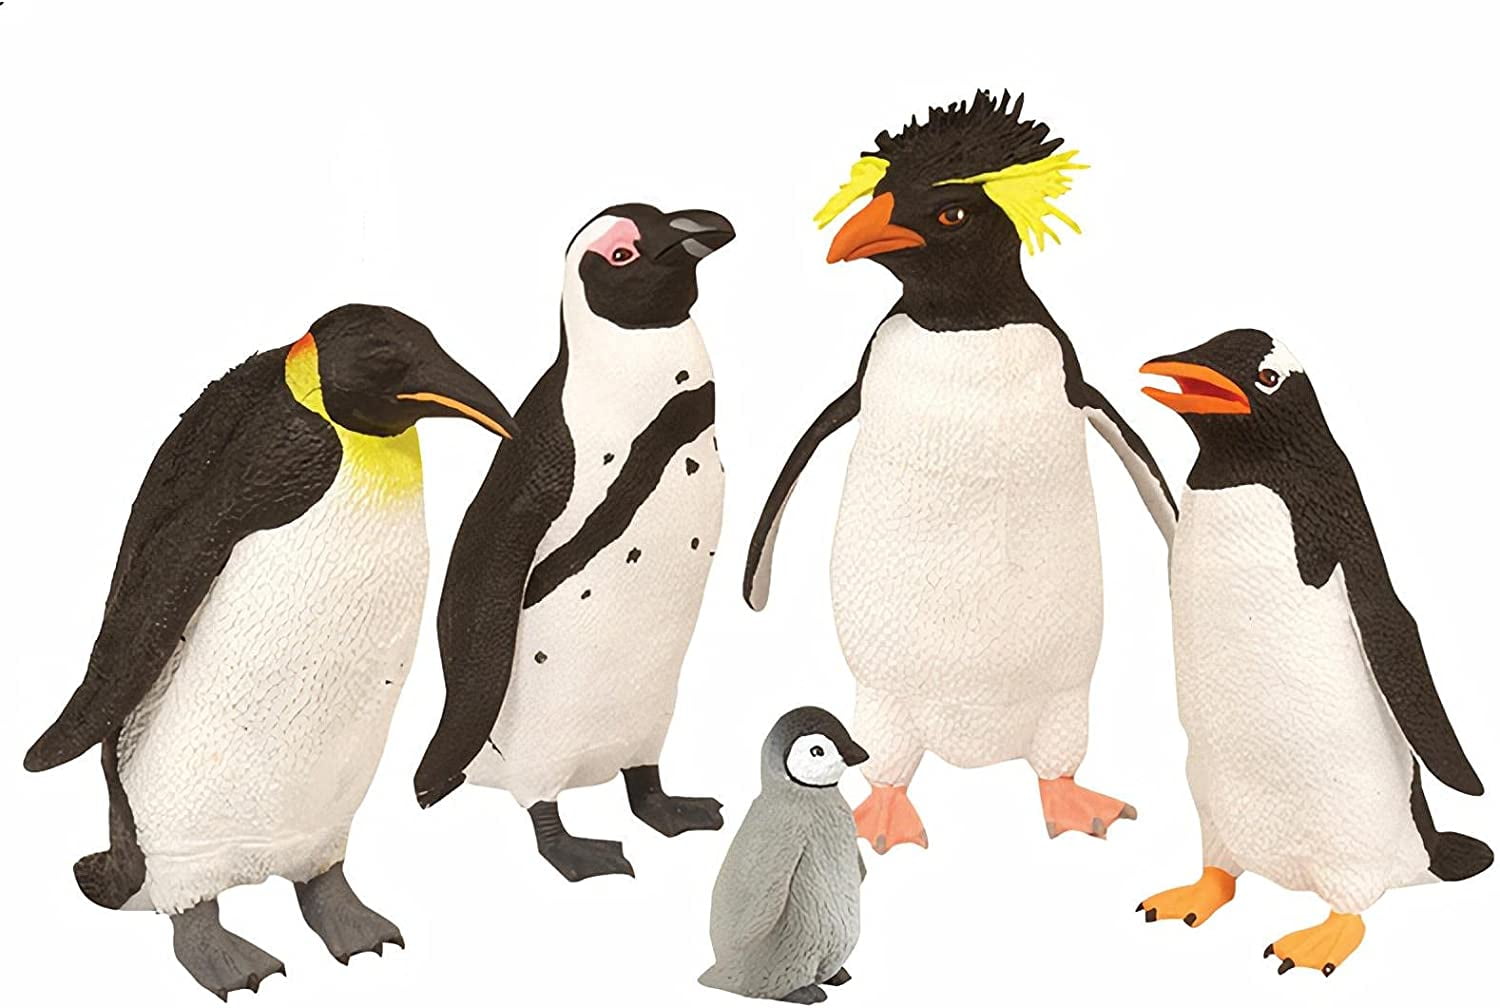 Set of 9 Liflike Penguin Family Model Figure Education Toy Gift Wild Animal 